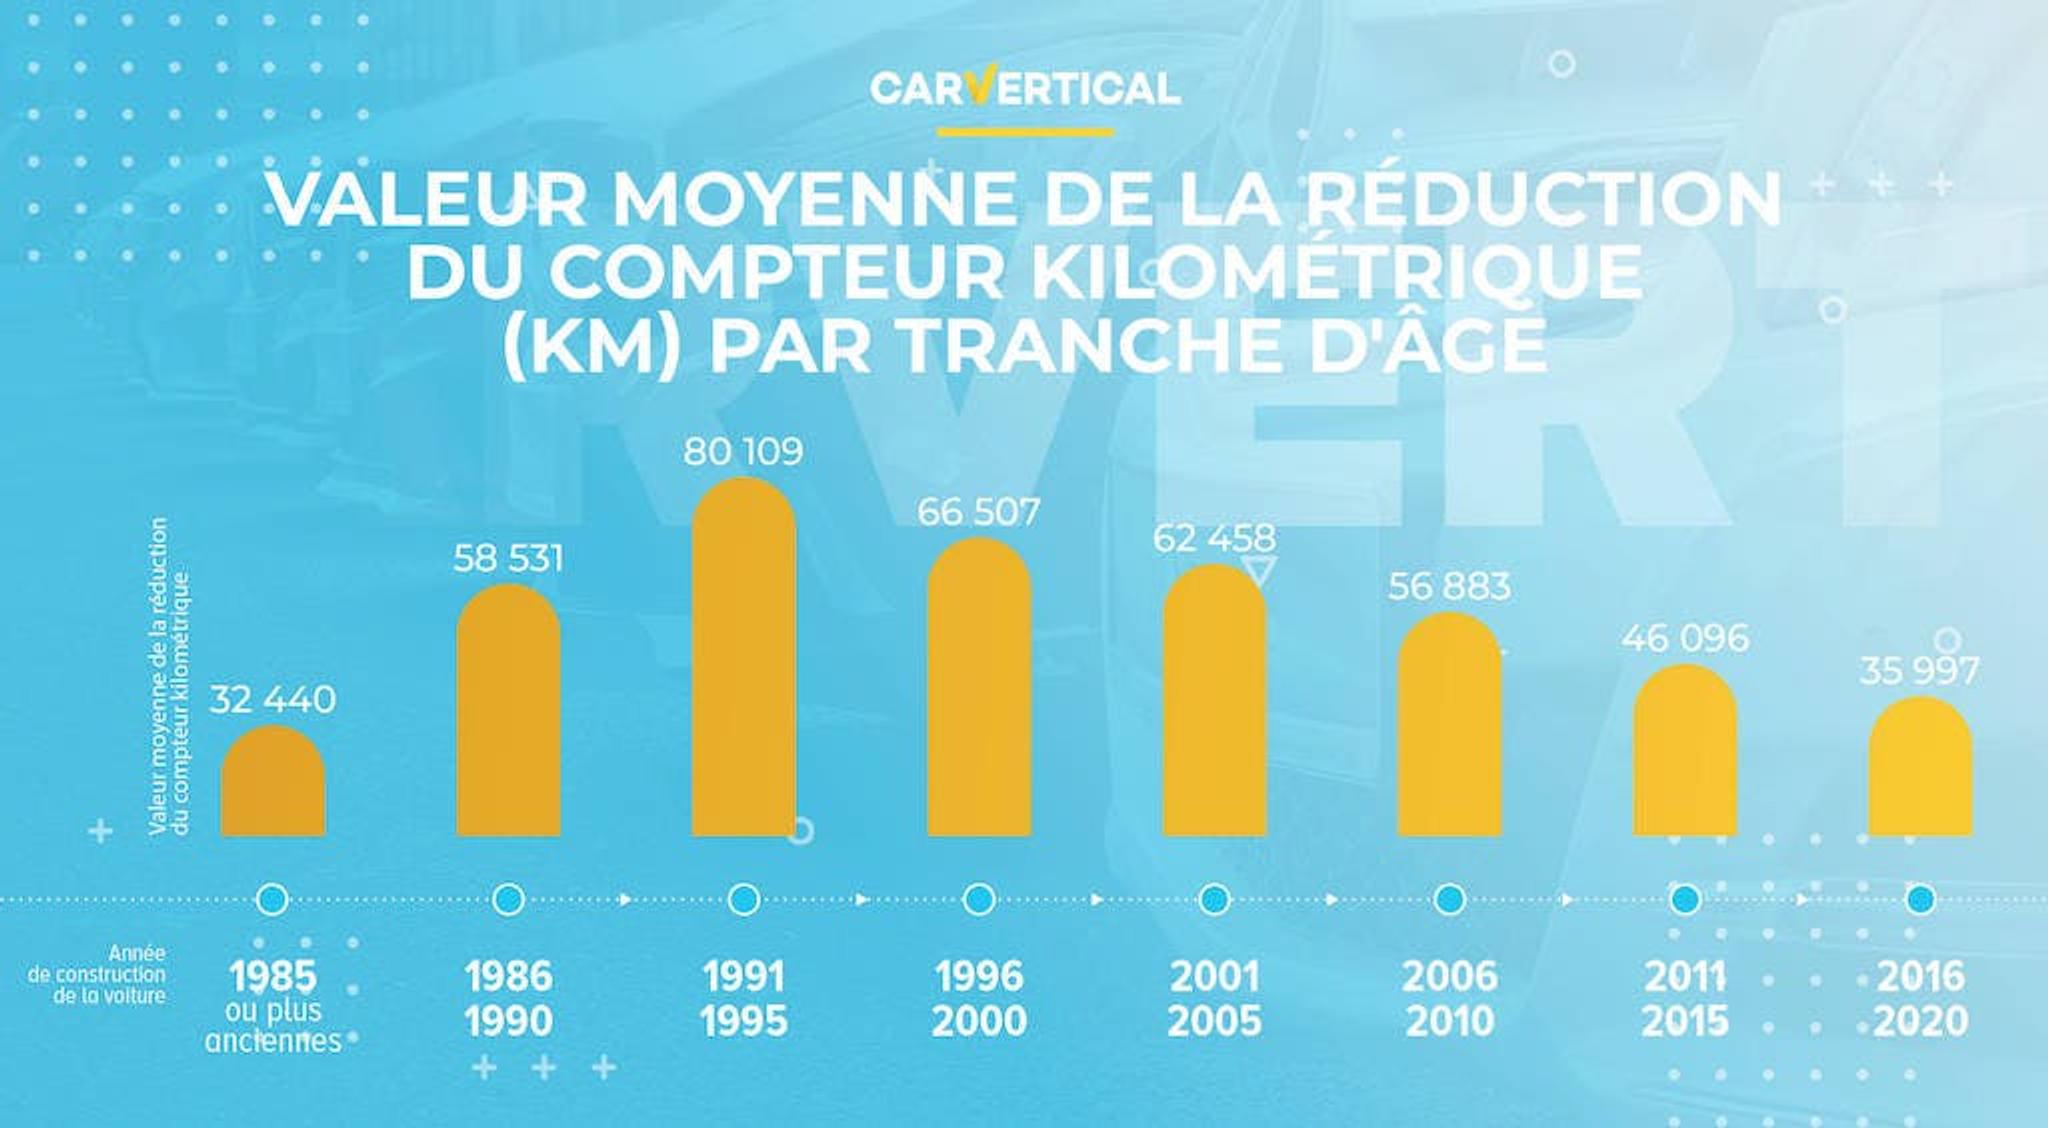 Valeur moyenne de la reduction du compteur kilometrique (km) par tranche d'age